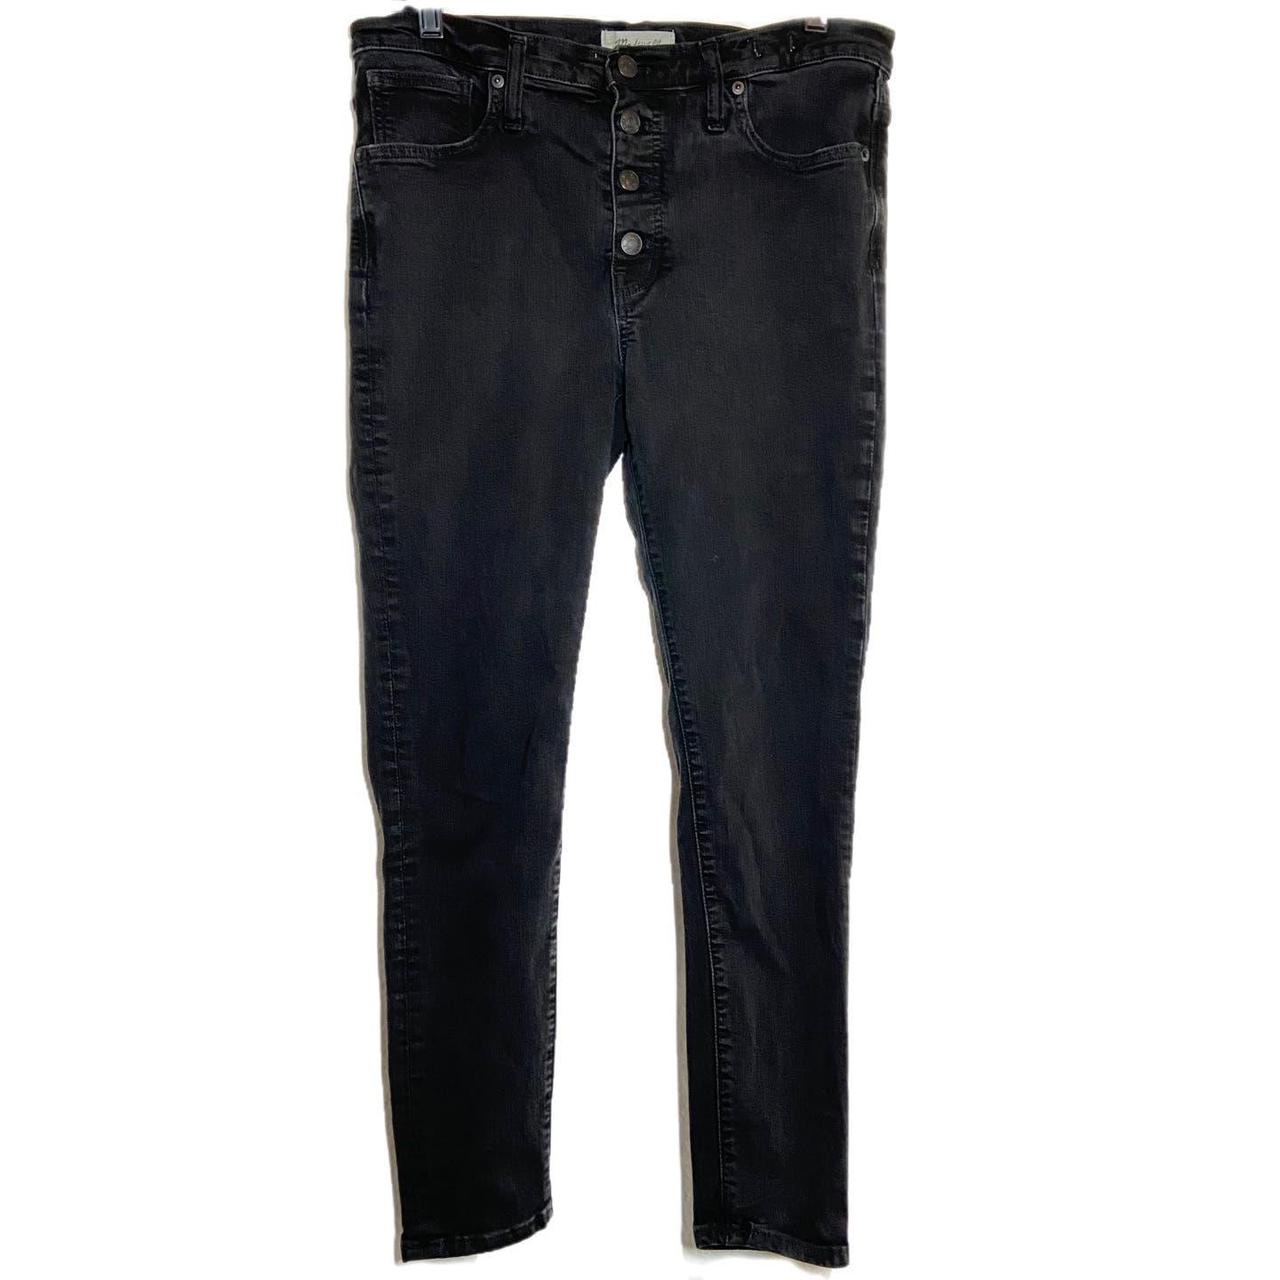 Madewell 9 Mid-Rise Skinny Jeans in Berkeley Black - Depop